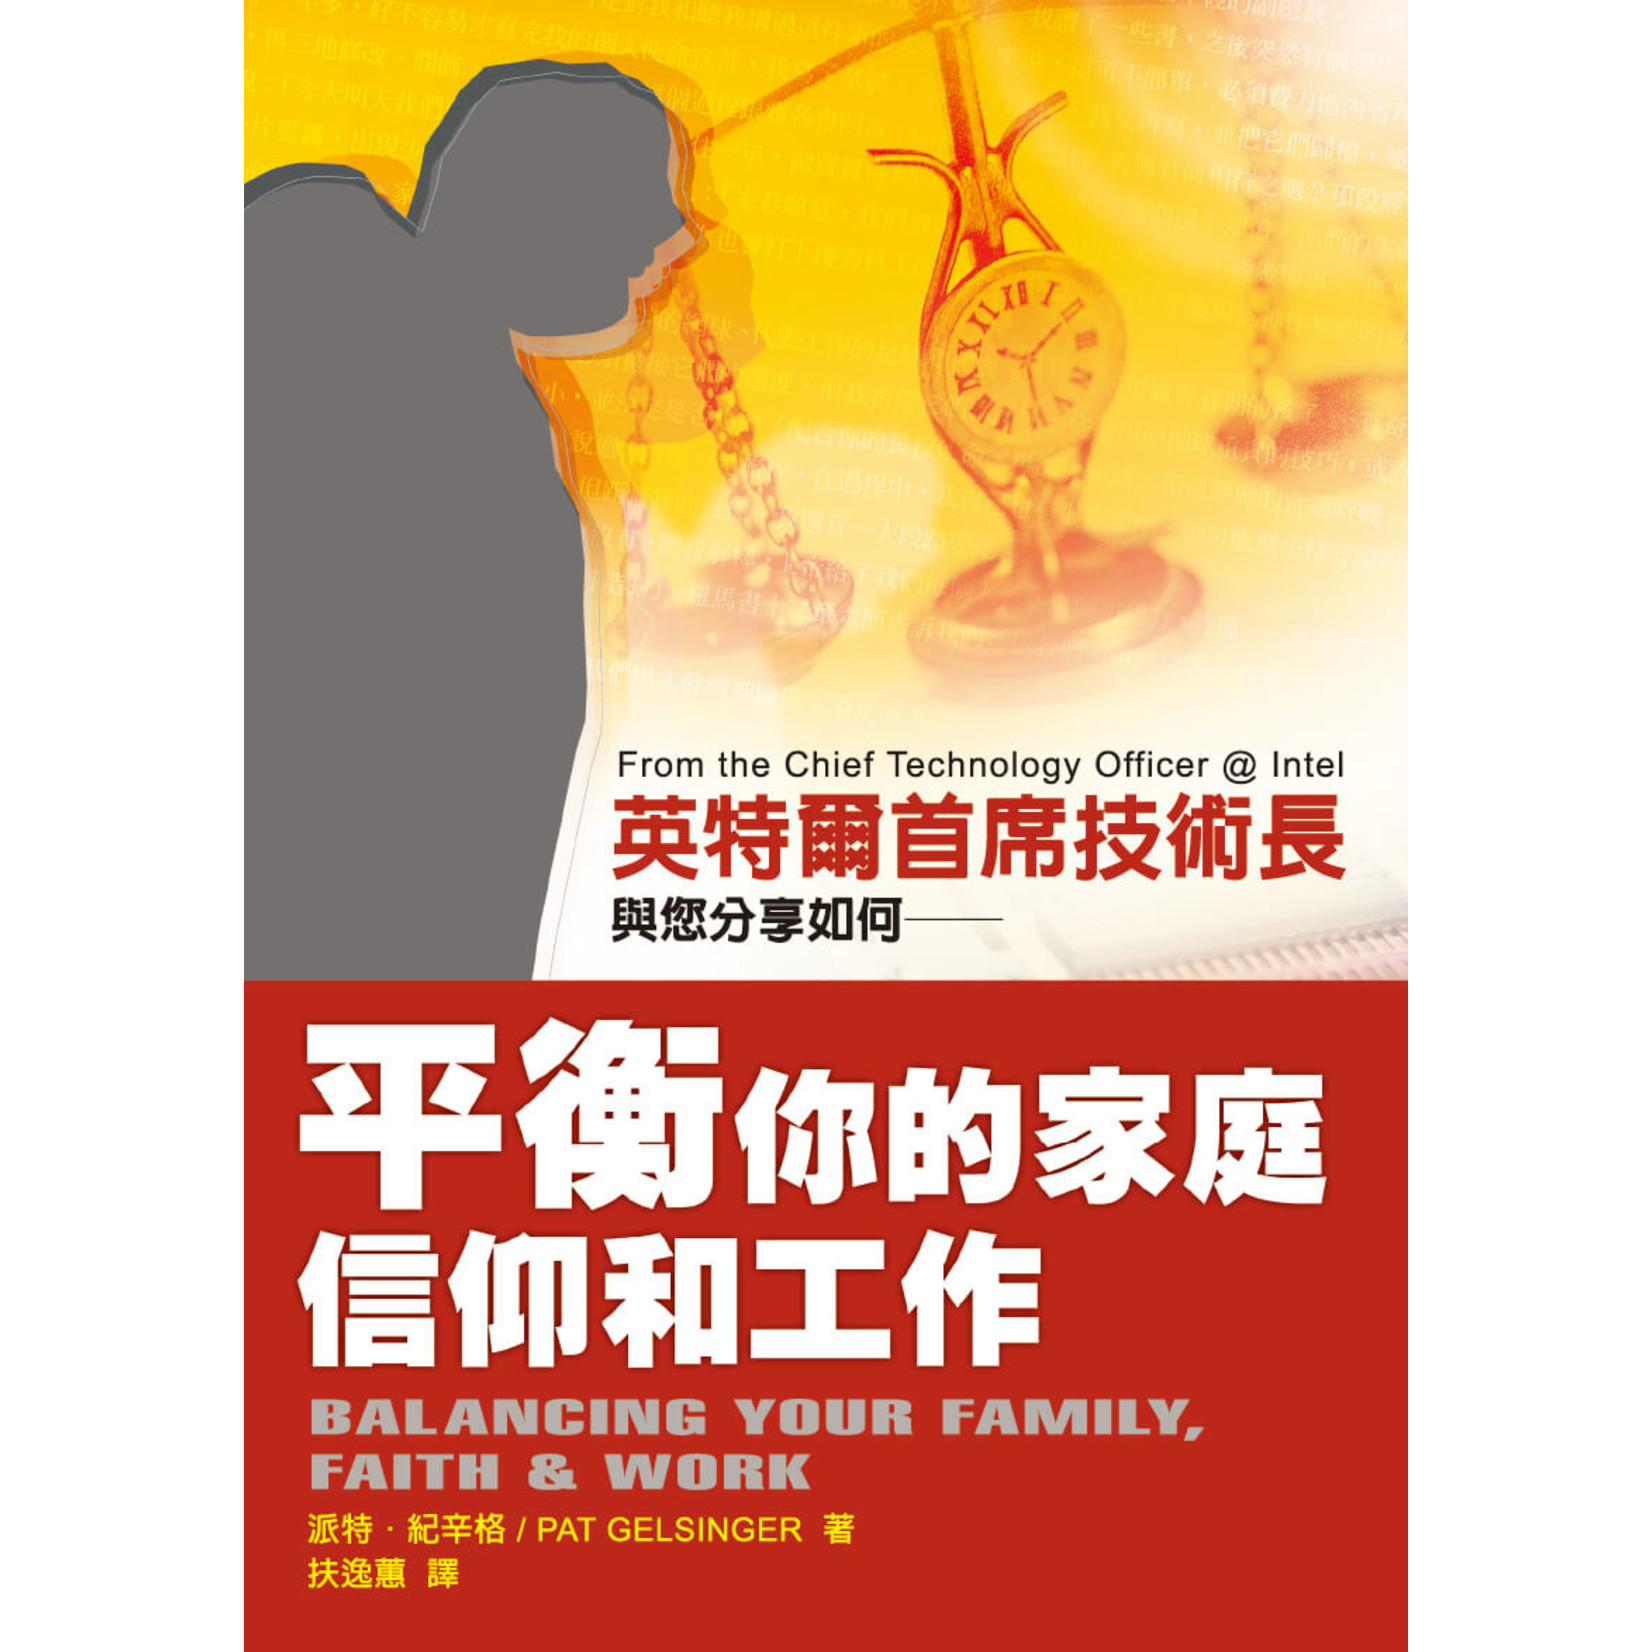 中國學園傳道會 Taiwan Campus Crusade for Christ 平衡你的家庭信仰和工作 | Balancing Your Family, Faith and Work